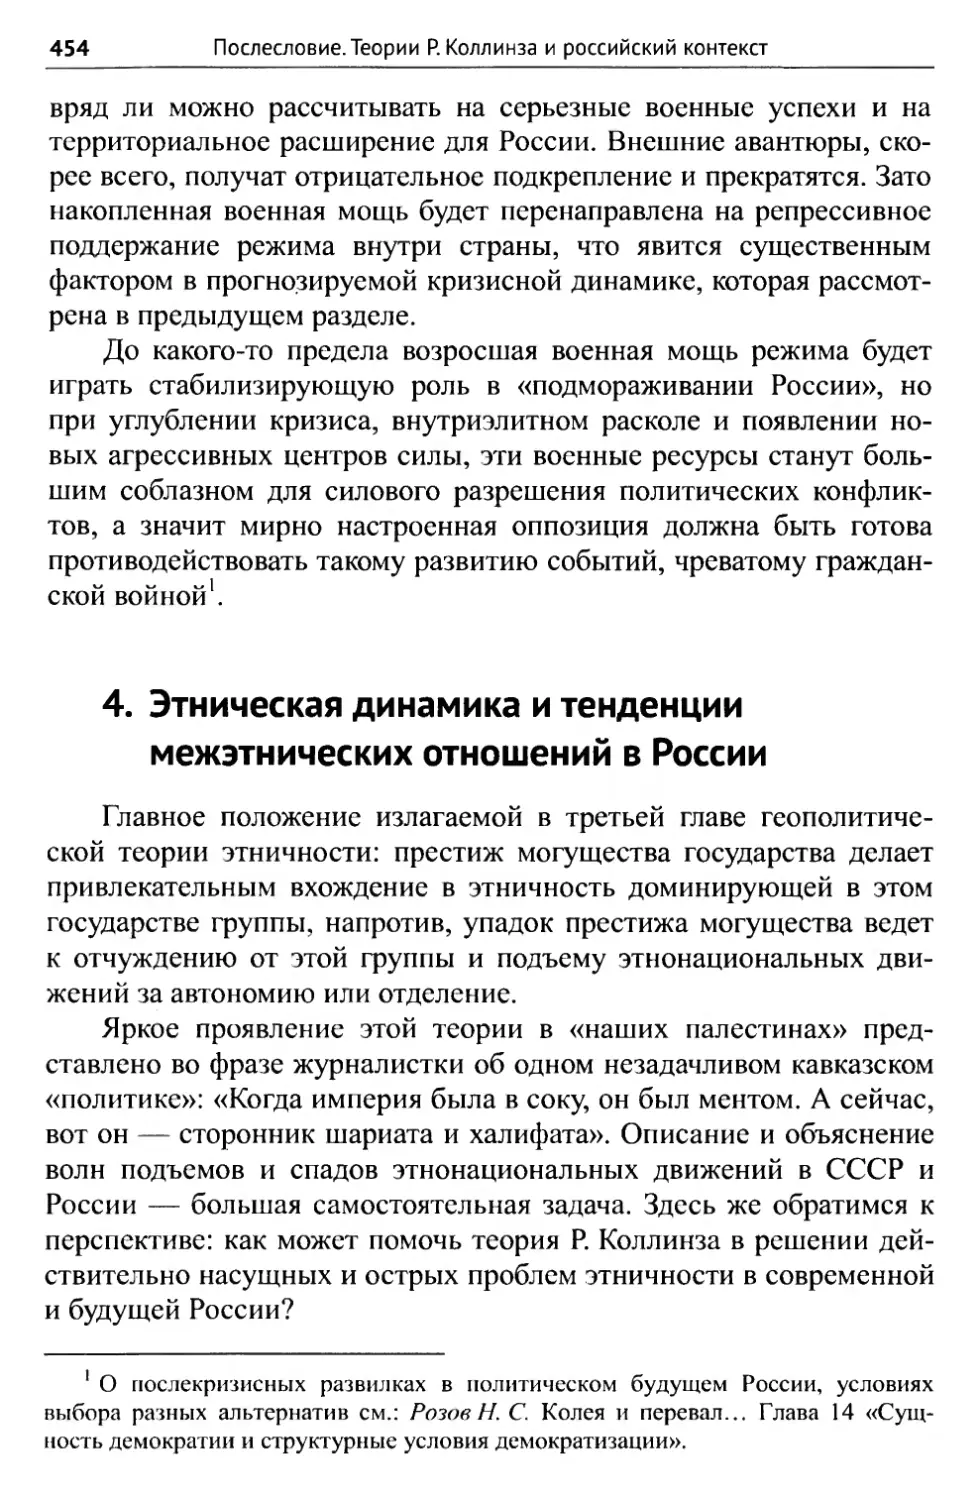 4. Этническая динамика и тенденции межэтнических отношений в России